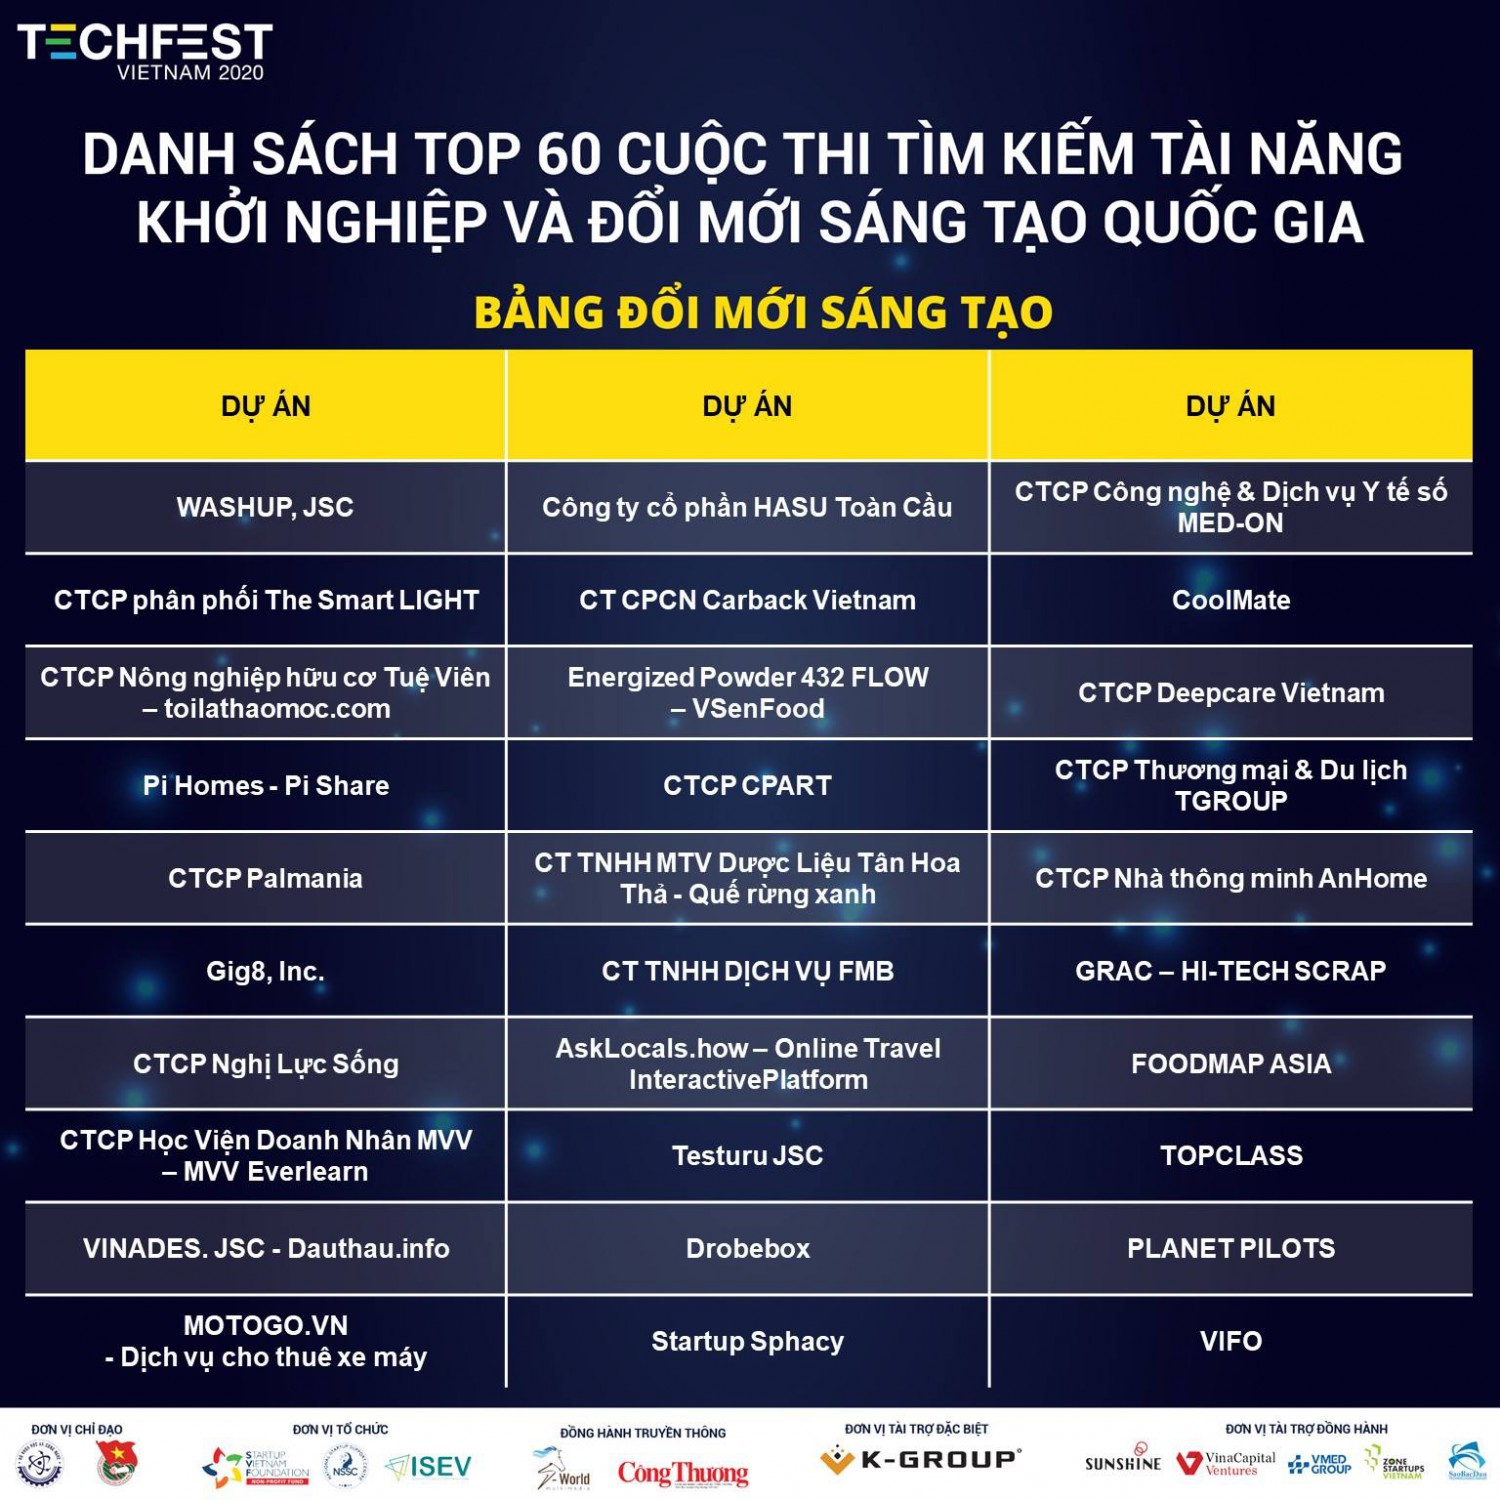 DauThau.info lọt TOP 60 Cuộc thi tìm kiếm tài năng khởi nghiệp đổi mới sáng tạo Quốc gia - Techfest Vietnam 2020